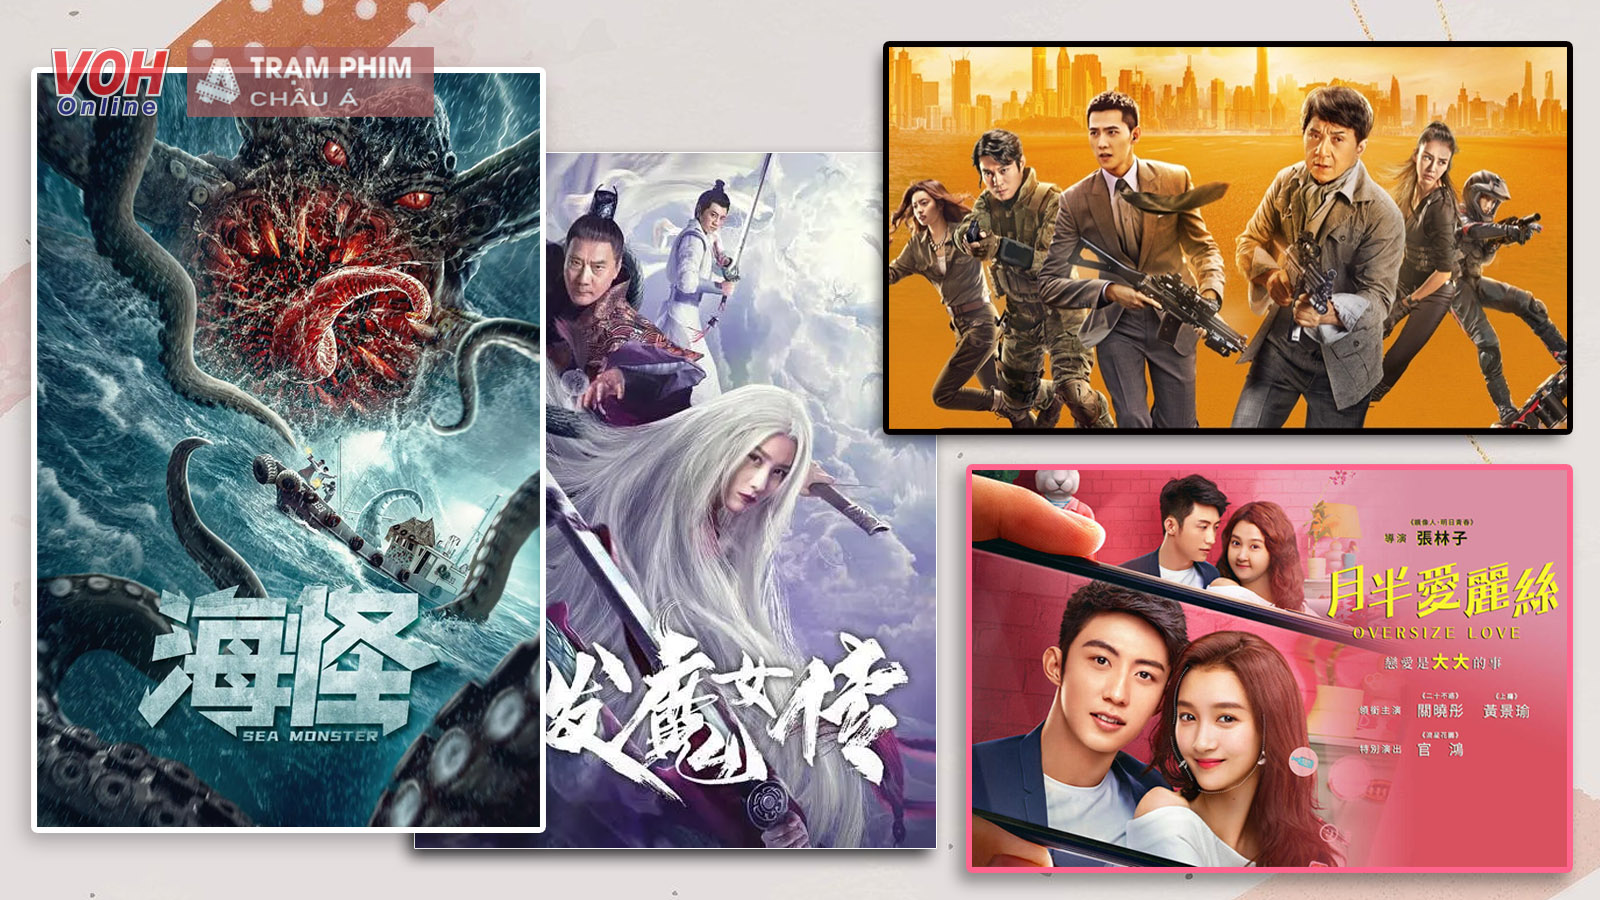 15 bộ phim lẻ Trung Quốc hay nhất năm 2020 mà các tín đồ mê phim không thể bỏ qua